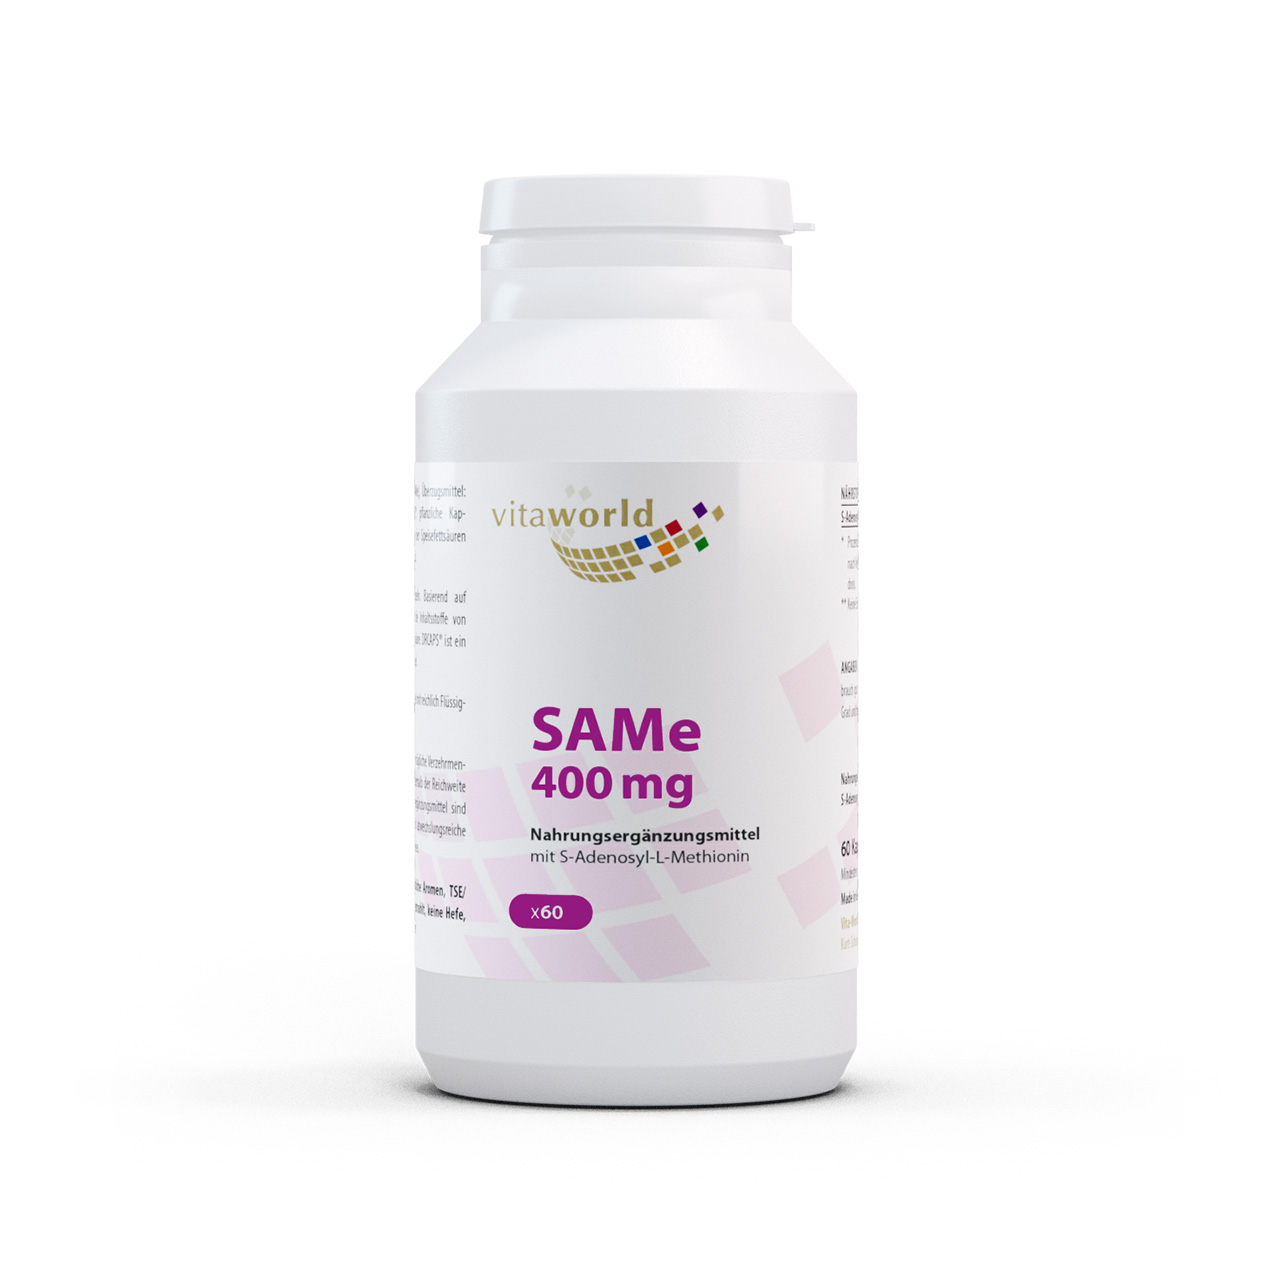 Vitaworld SAMe 400mg | 60 Kapseln | enthält 75 % aktives und 25 % inaktives Isomer | vegan | gluten- und laktosefrei